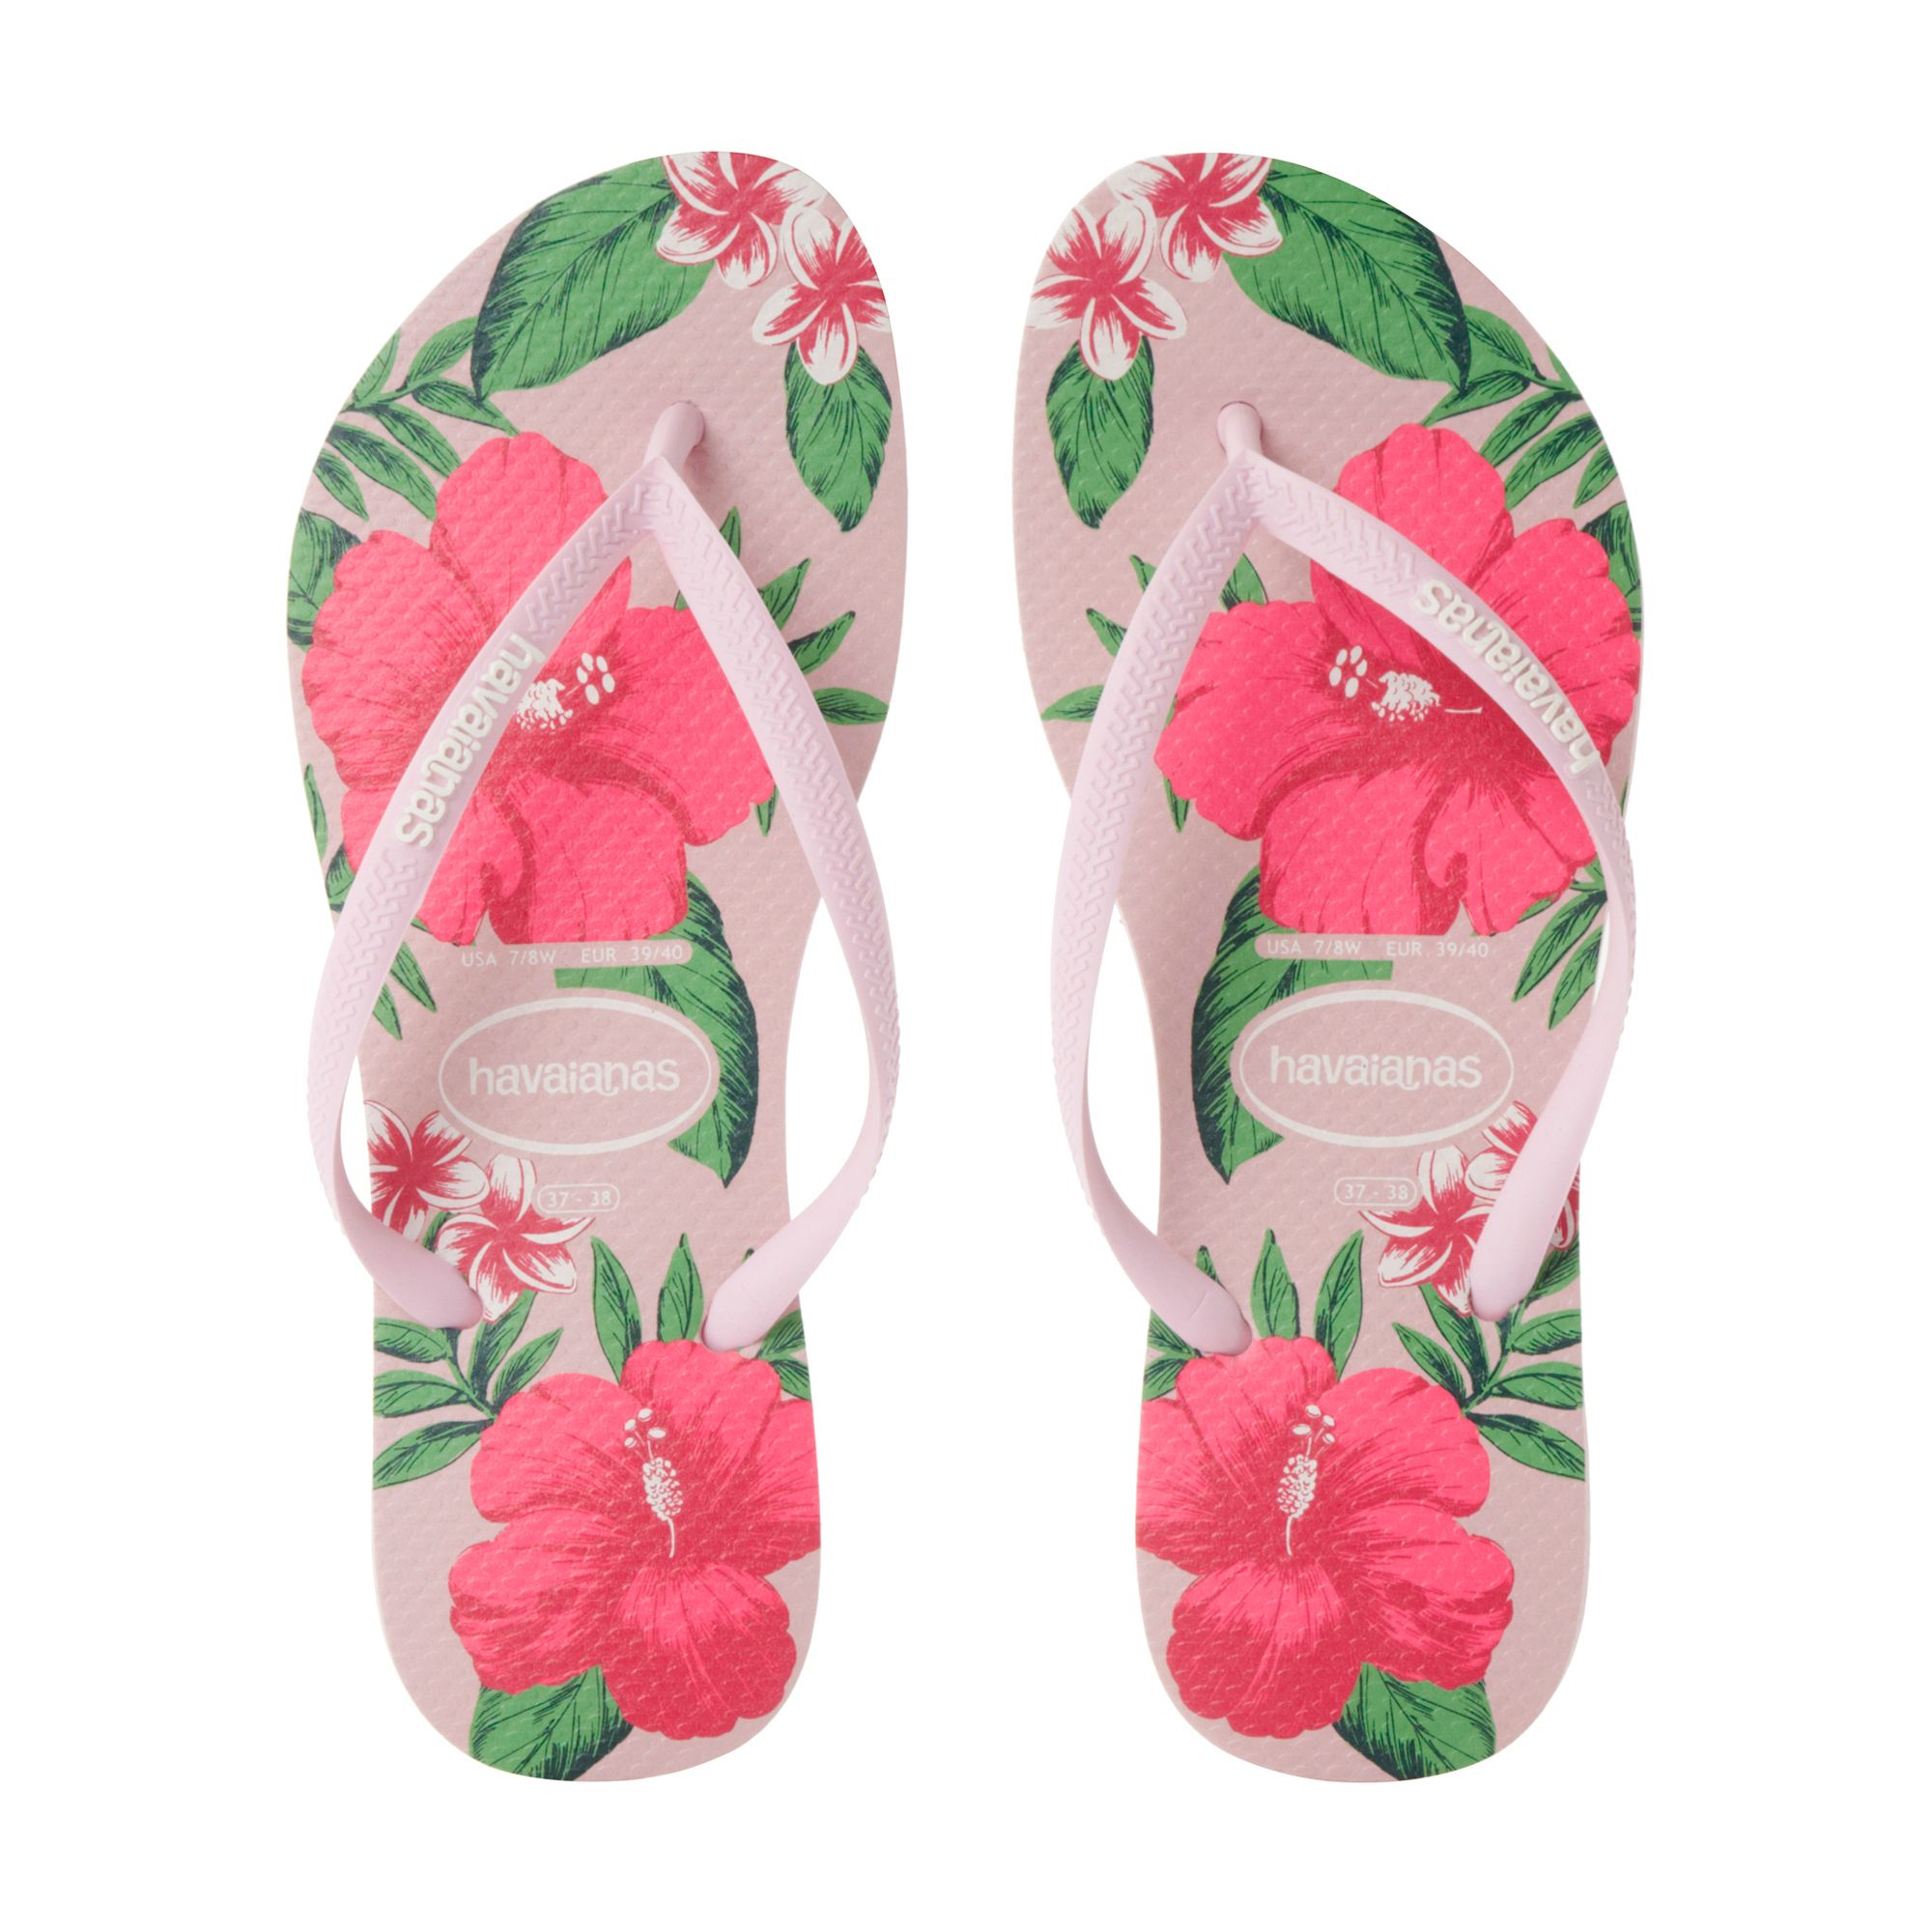  Havaianas  Slim Floral Print Flip Flops  in Pink  Lyst